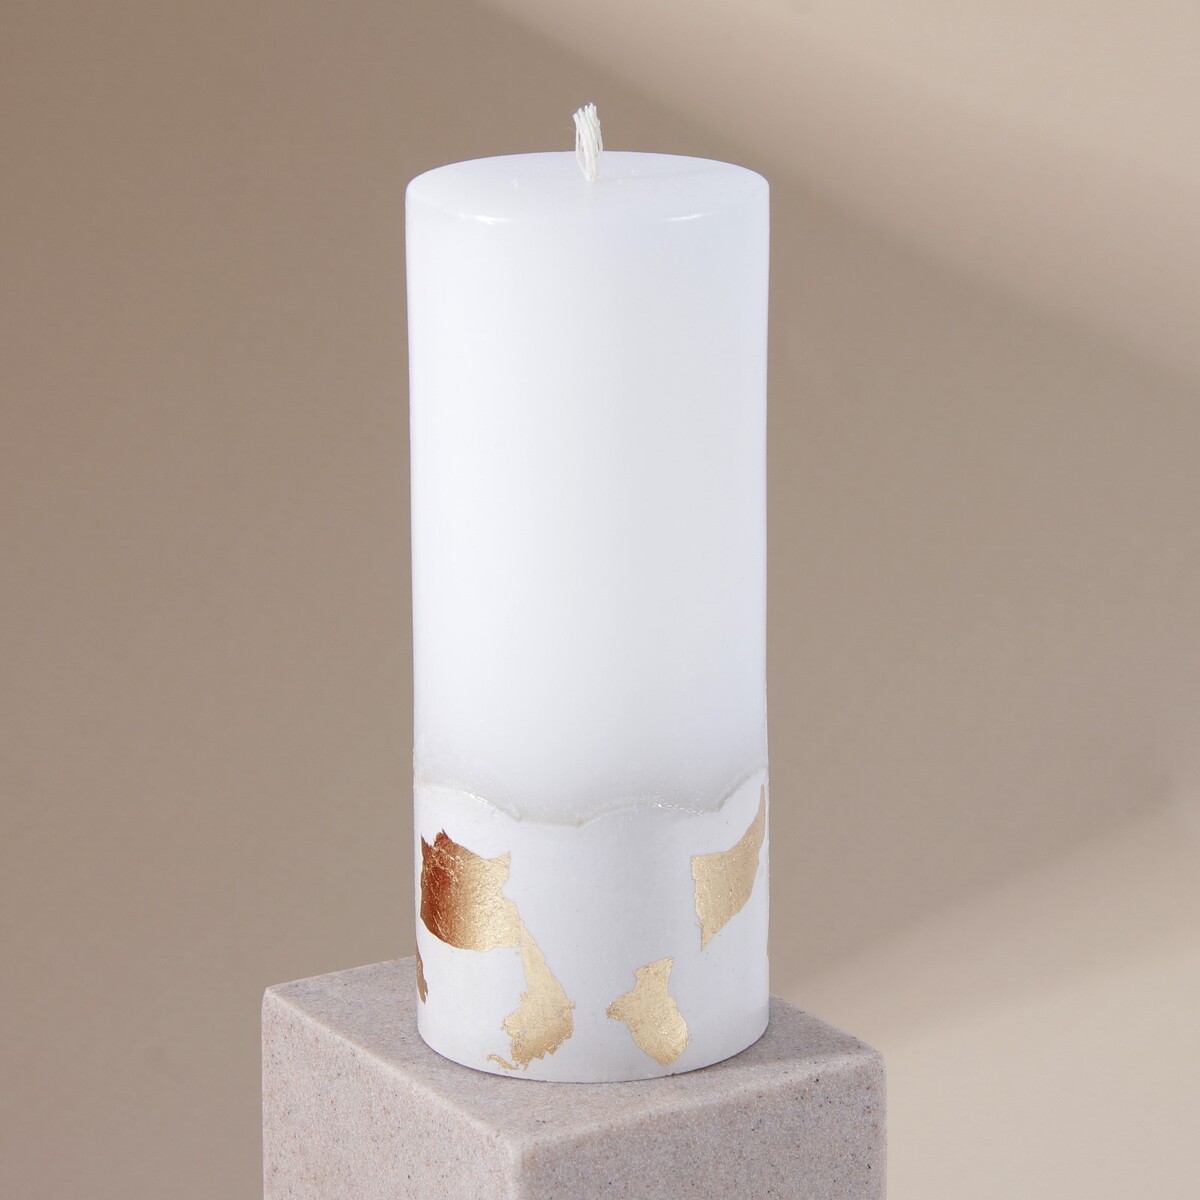 Свеча интерьерная белая с бетоном (поталь), 15 х 6 см свеча античная 2 2х 25 см лакированная белая